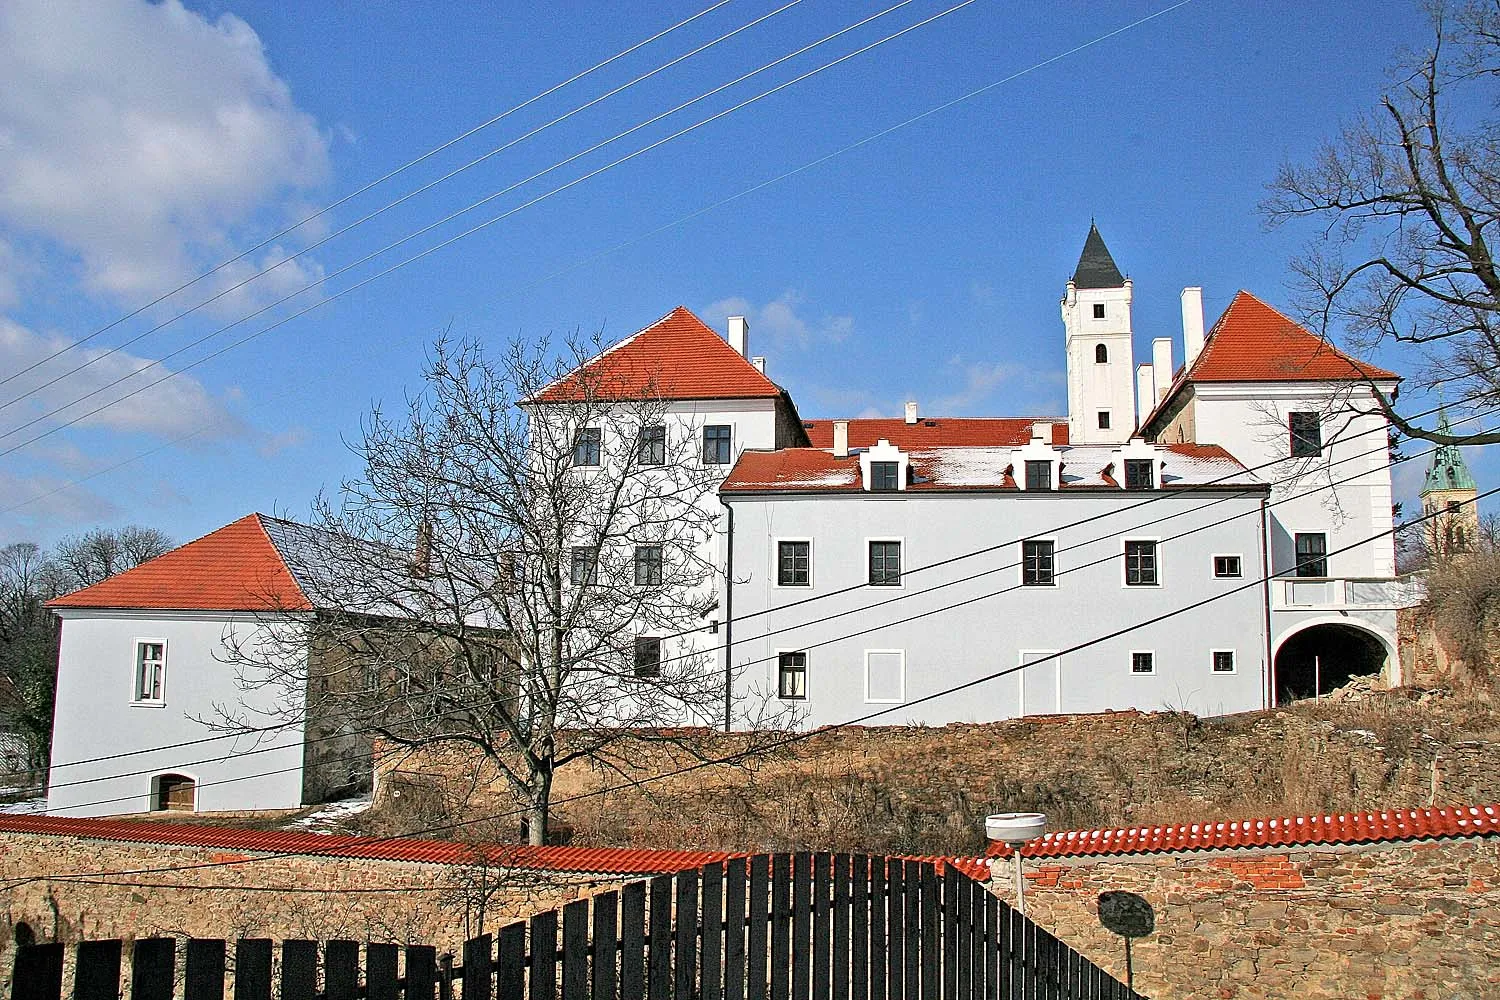 Photo showing: Zámek v Zásmukách
autor: Prazak

Date: 27. 2. 2006